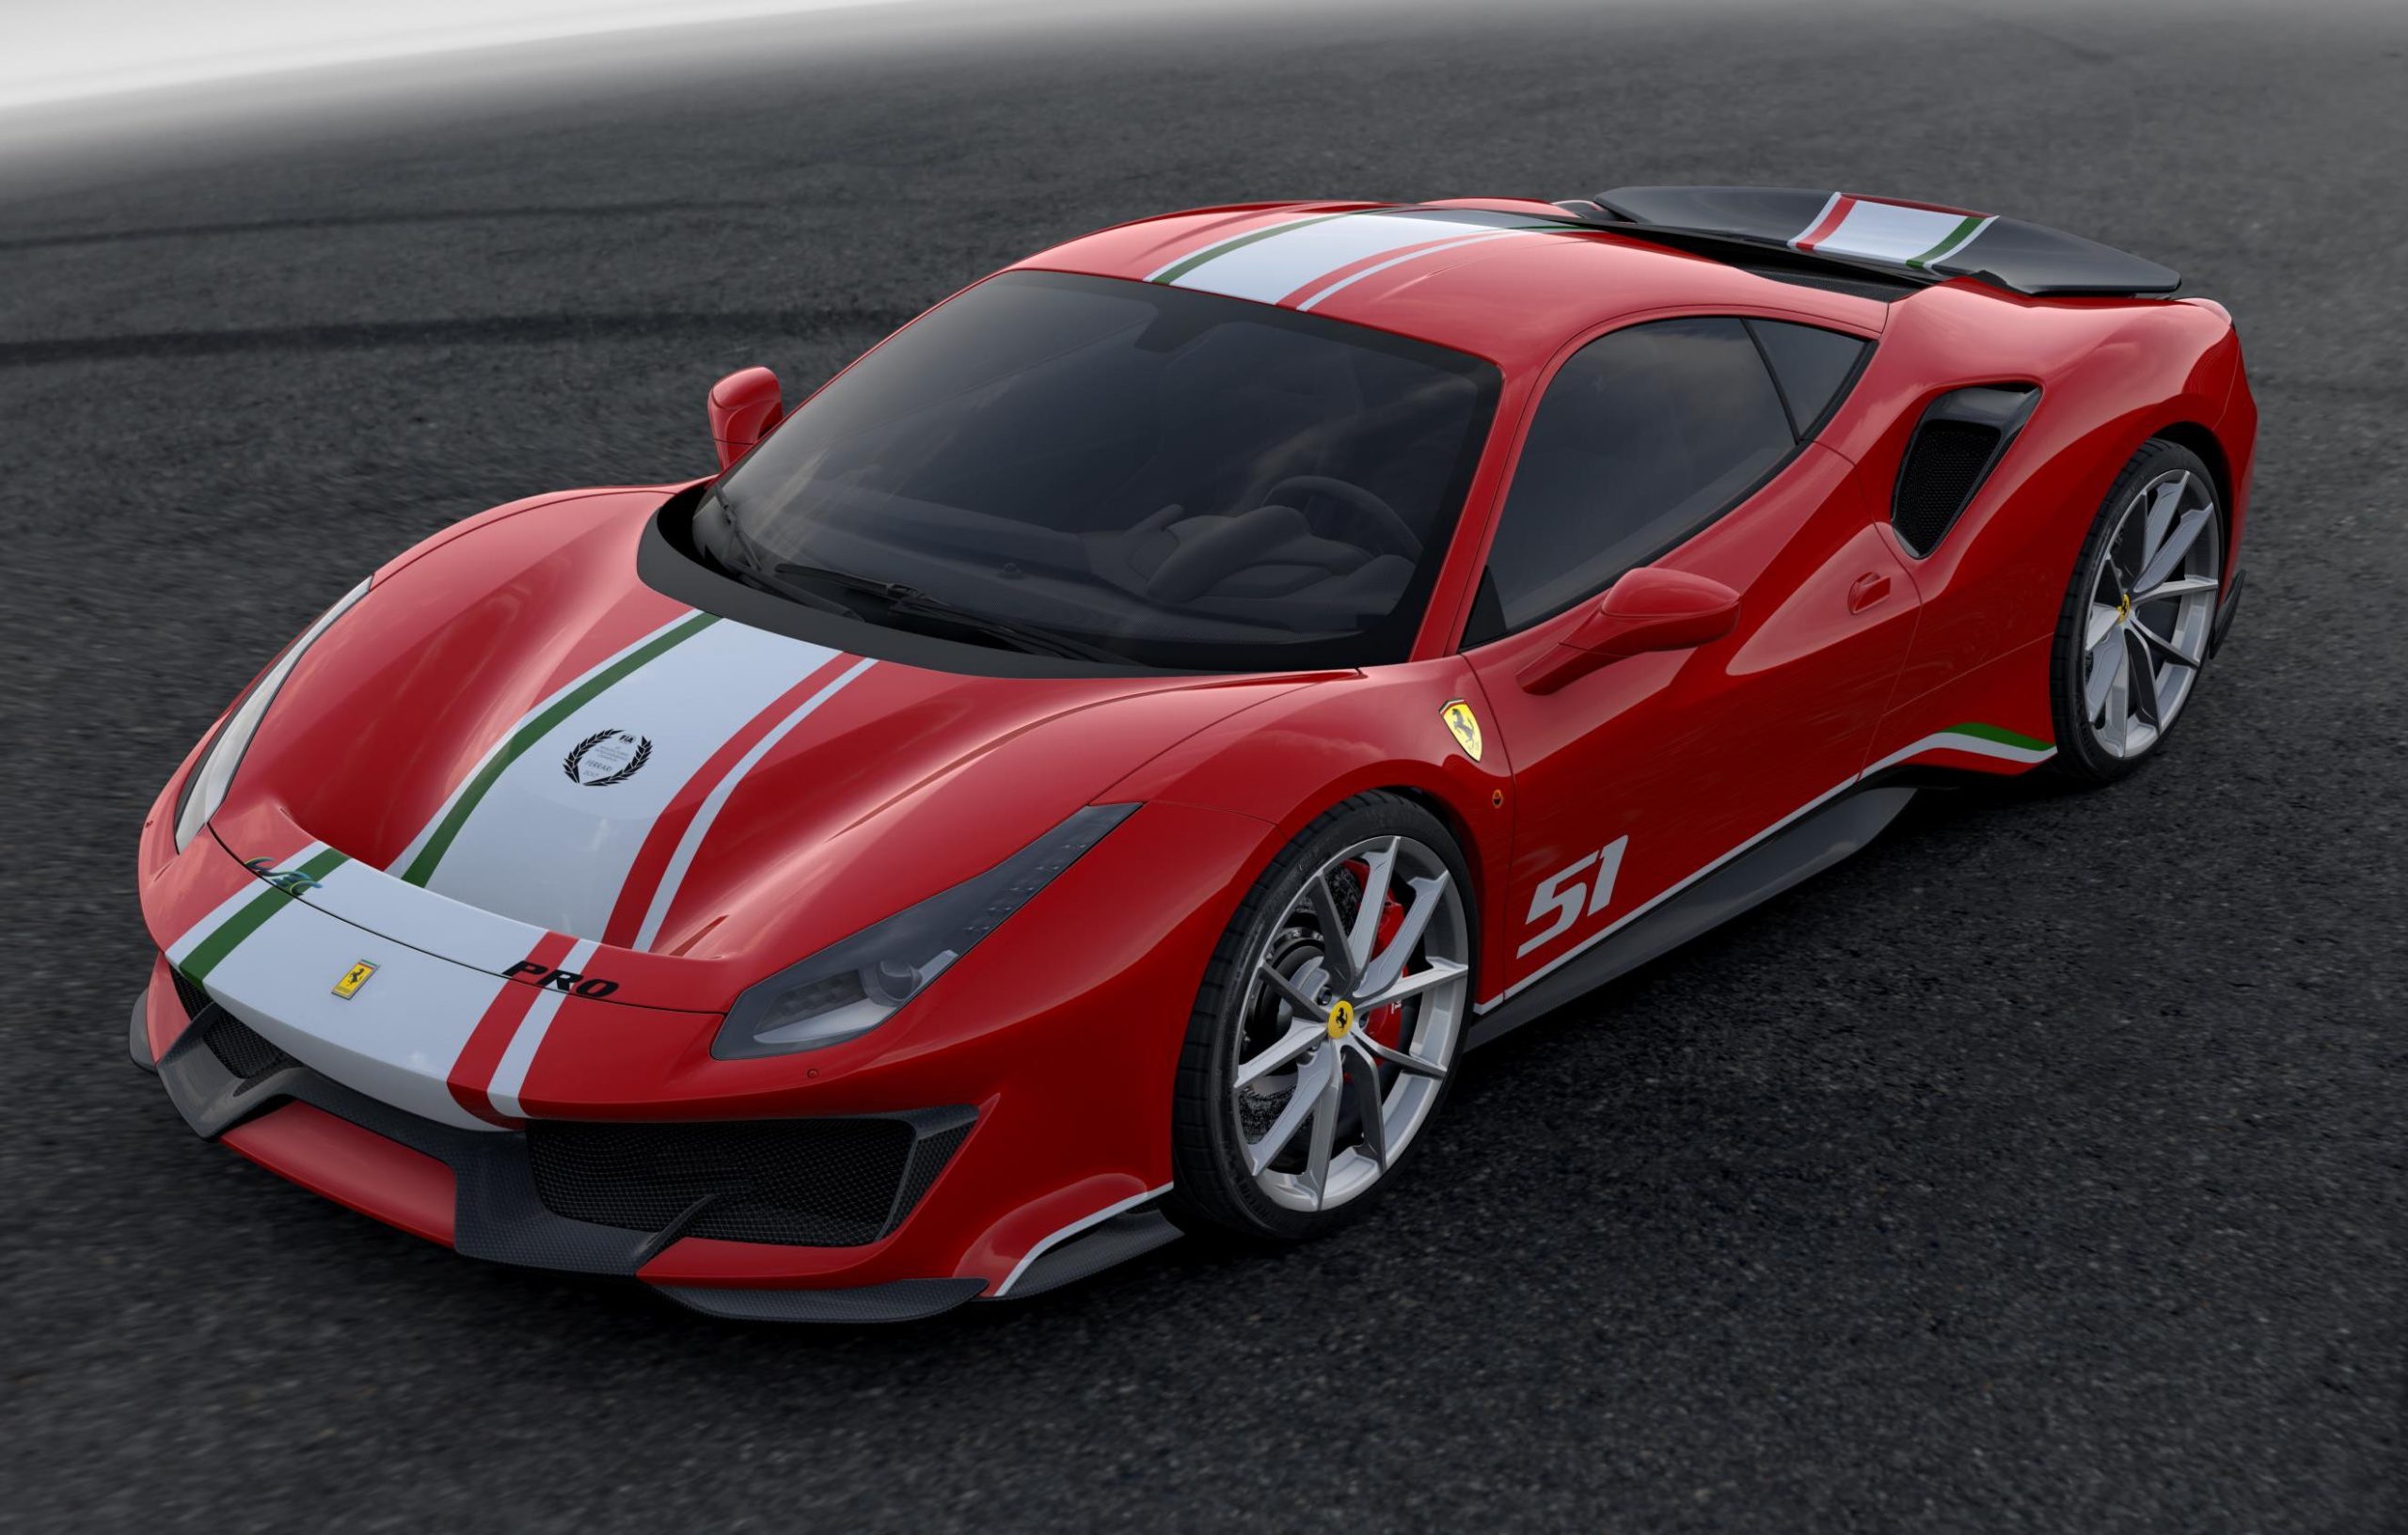 Ferrari 488 Pista ‘Piloti Ferrari’ special edition revealed